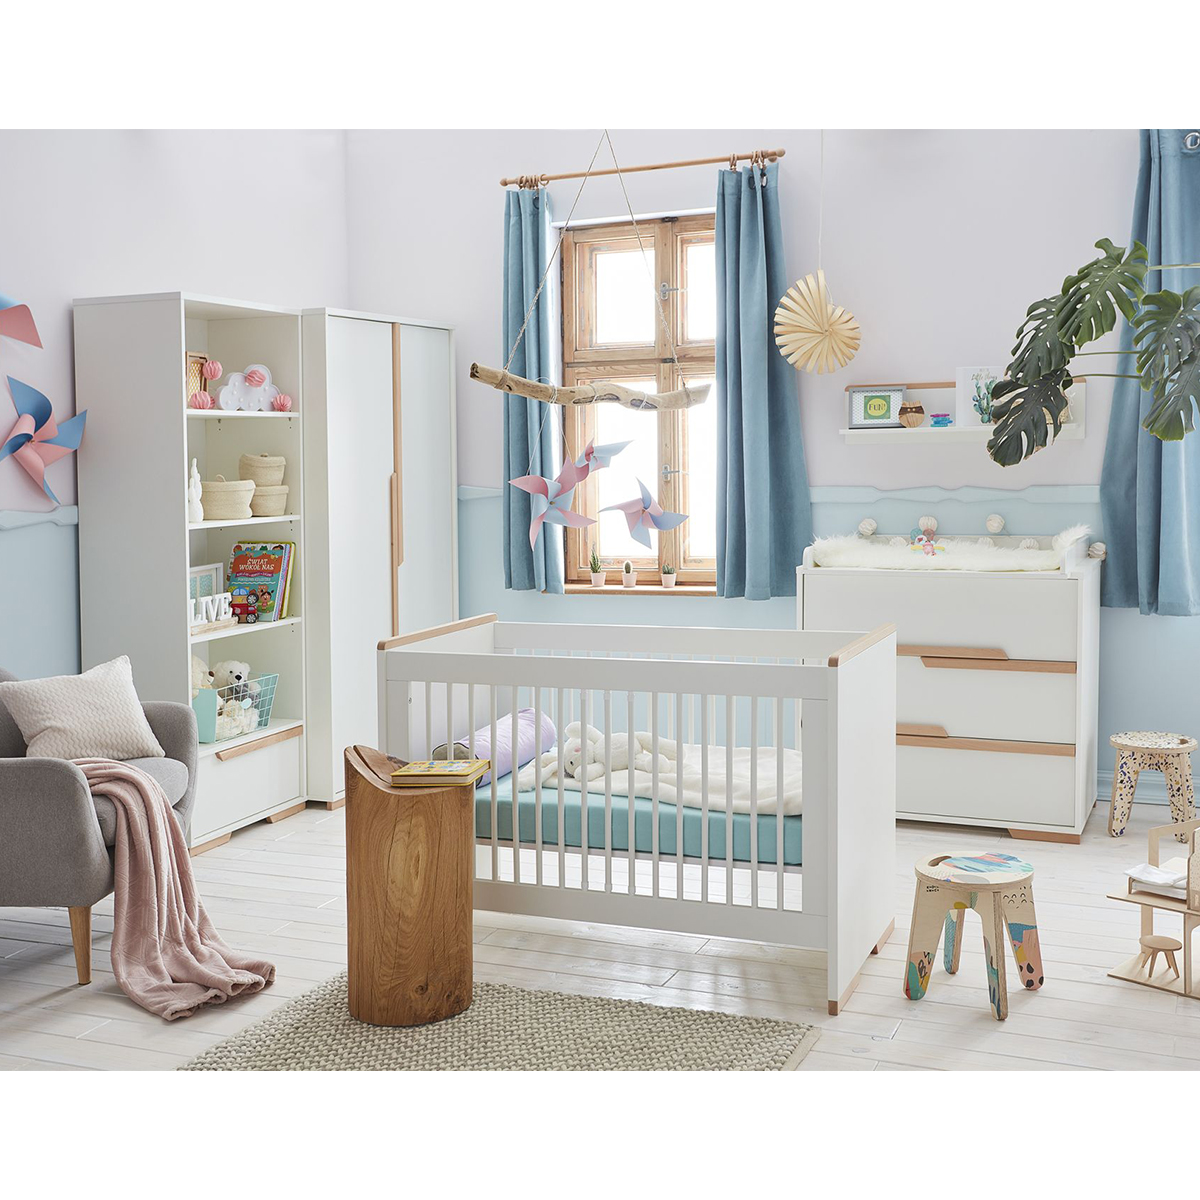 Chambre complète lit bébé 60x120 - commode à langer - armoire 2 portes Pinio Snap - Blanc et bois